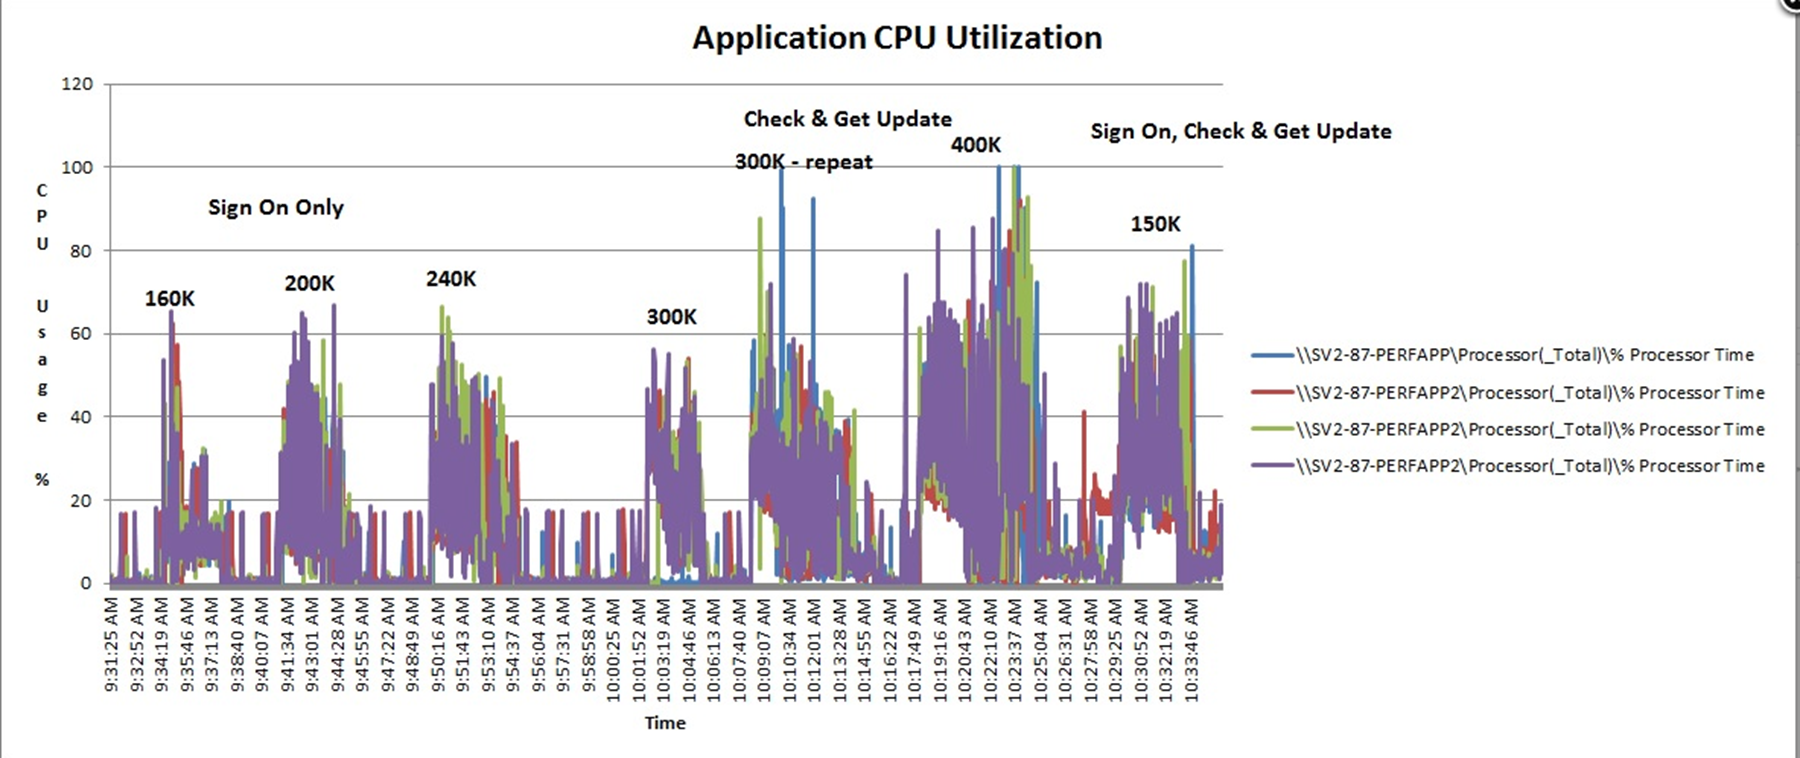 Application CPU utilization